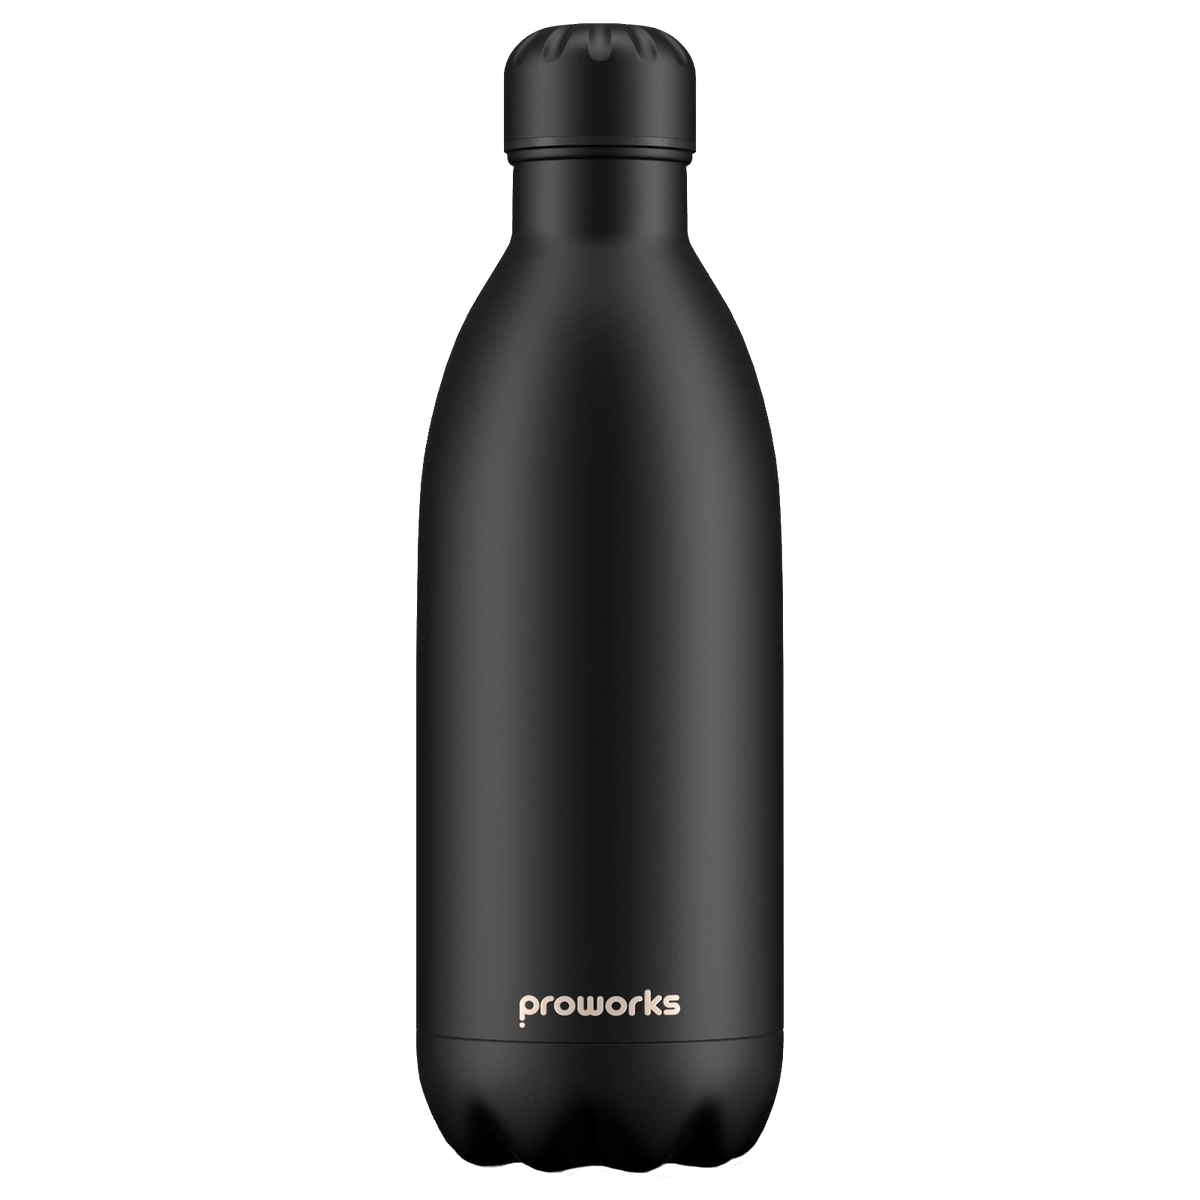 Botella de bebida Proworks Explorer de 1,5 litros - Proworks Bottles